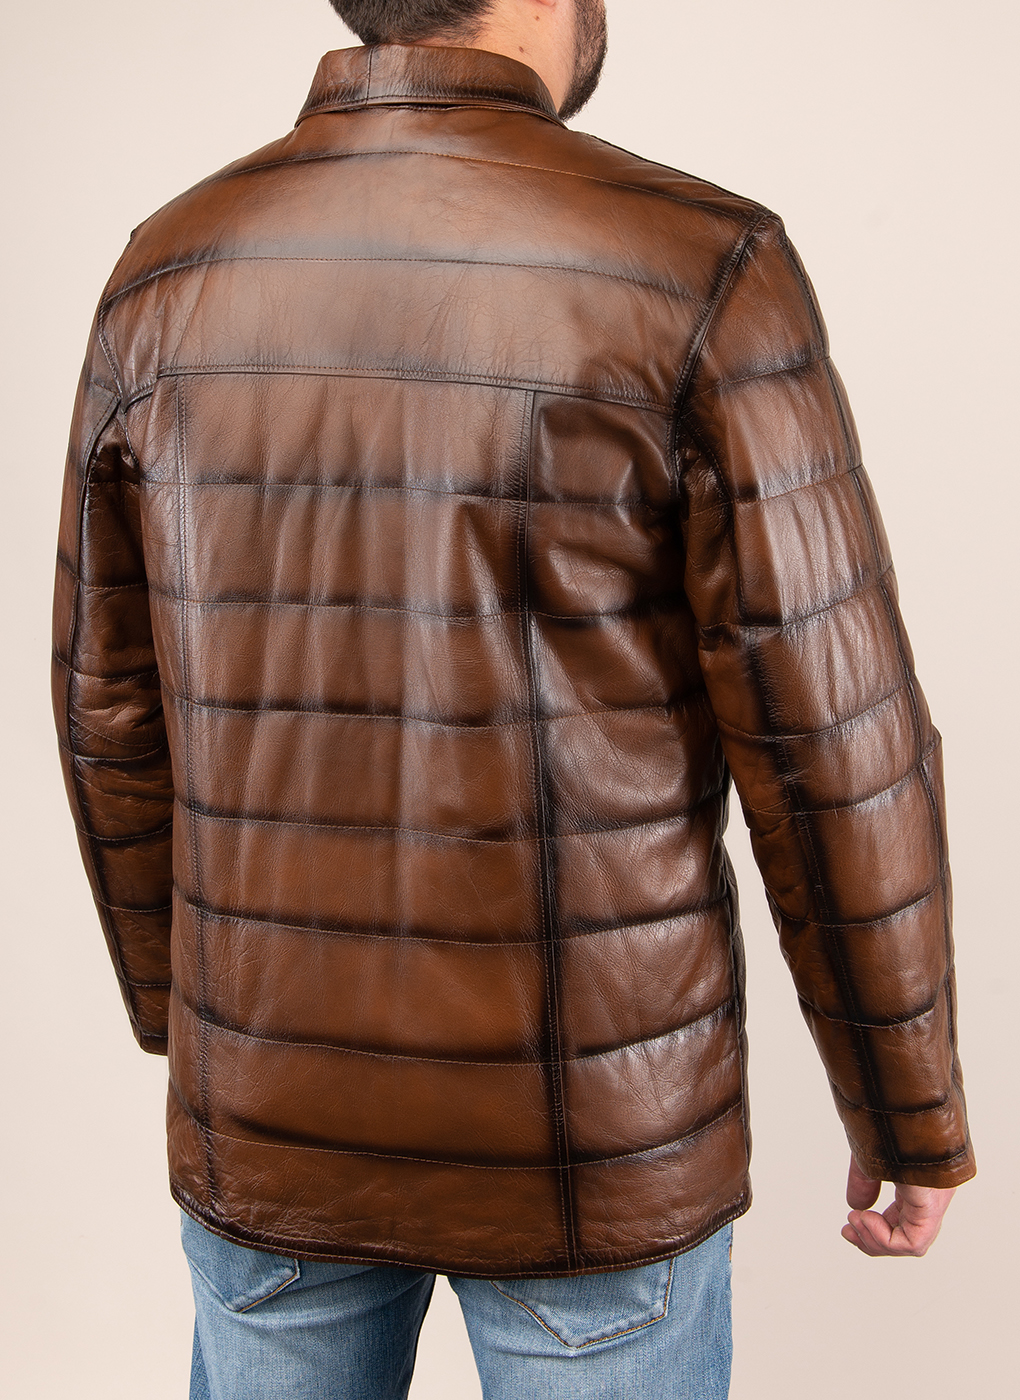 Кожаная куртка мужская Каляев 1625381 коричневая 46 RU